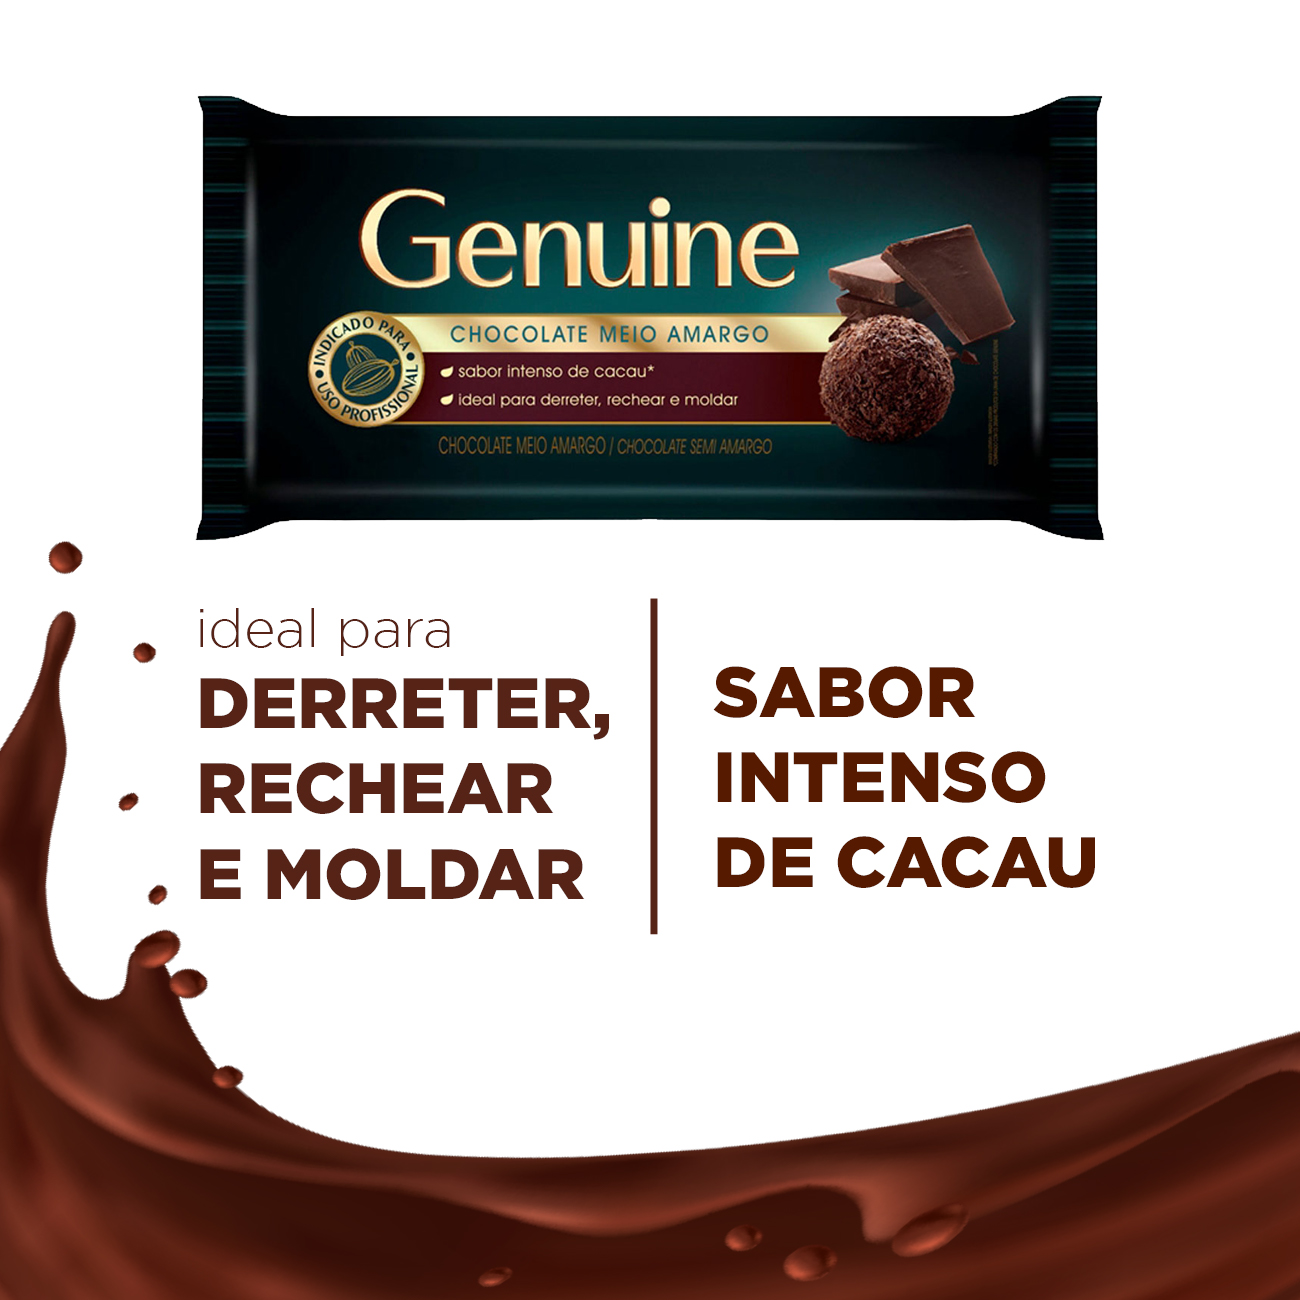 Cobertura de Chocolate em Barra Cargill Genuine Meio Amargo 1kg